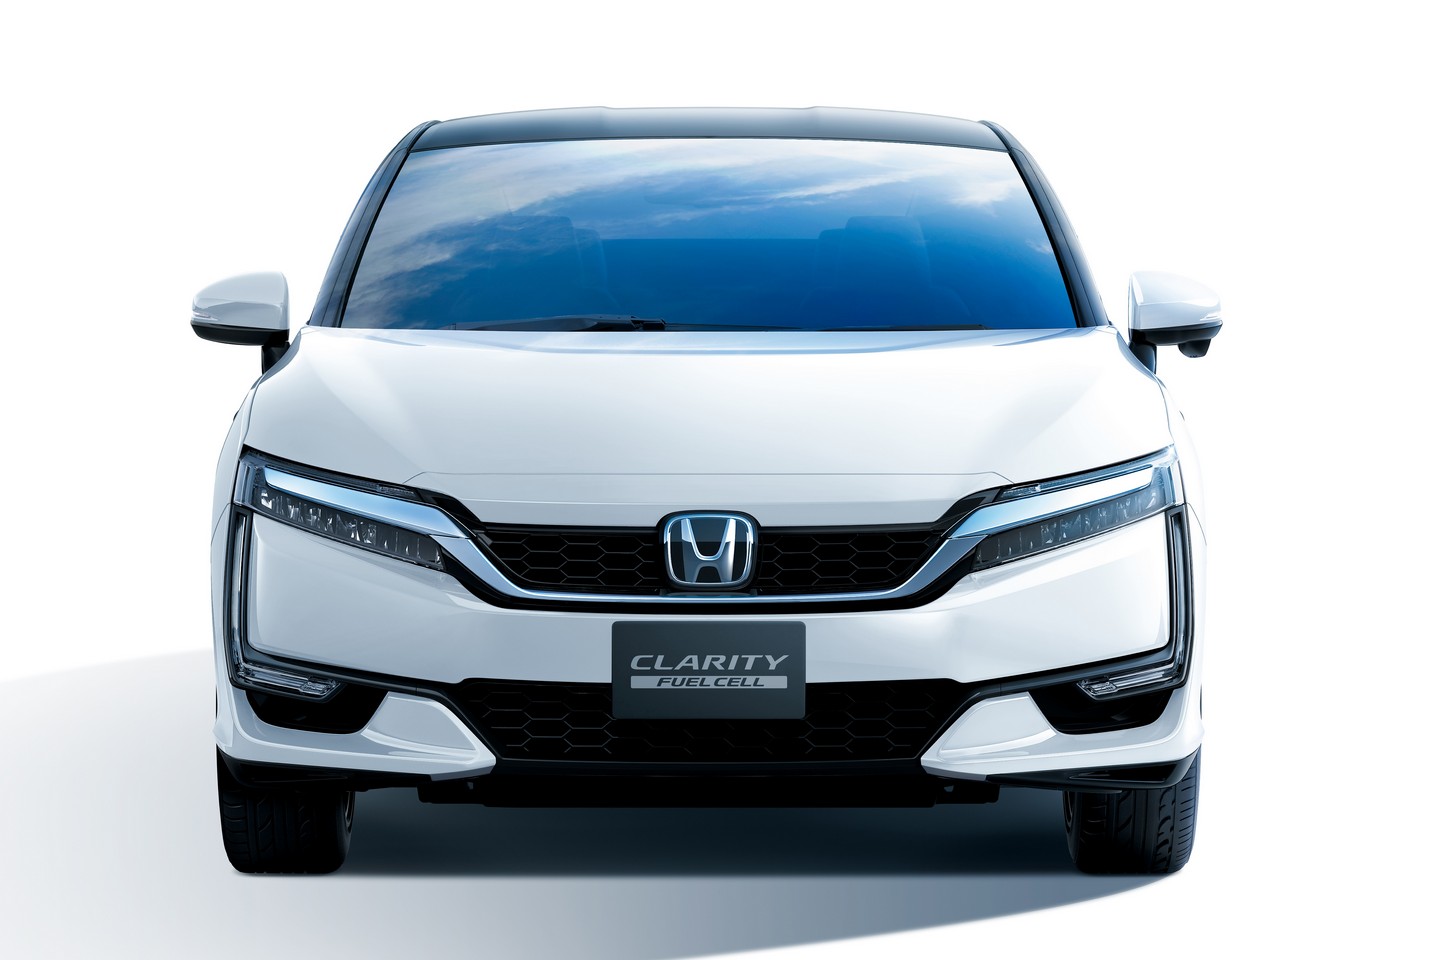  ورود خودروی هیدروژنی هوندا به بازار 